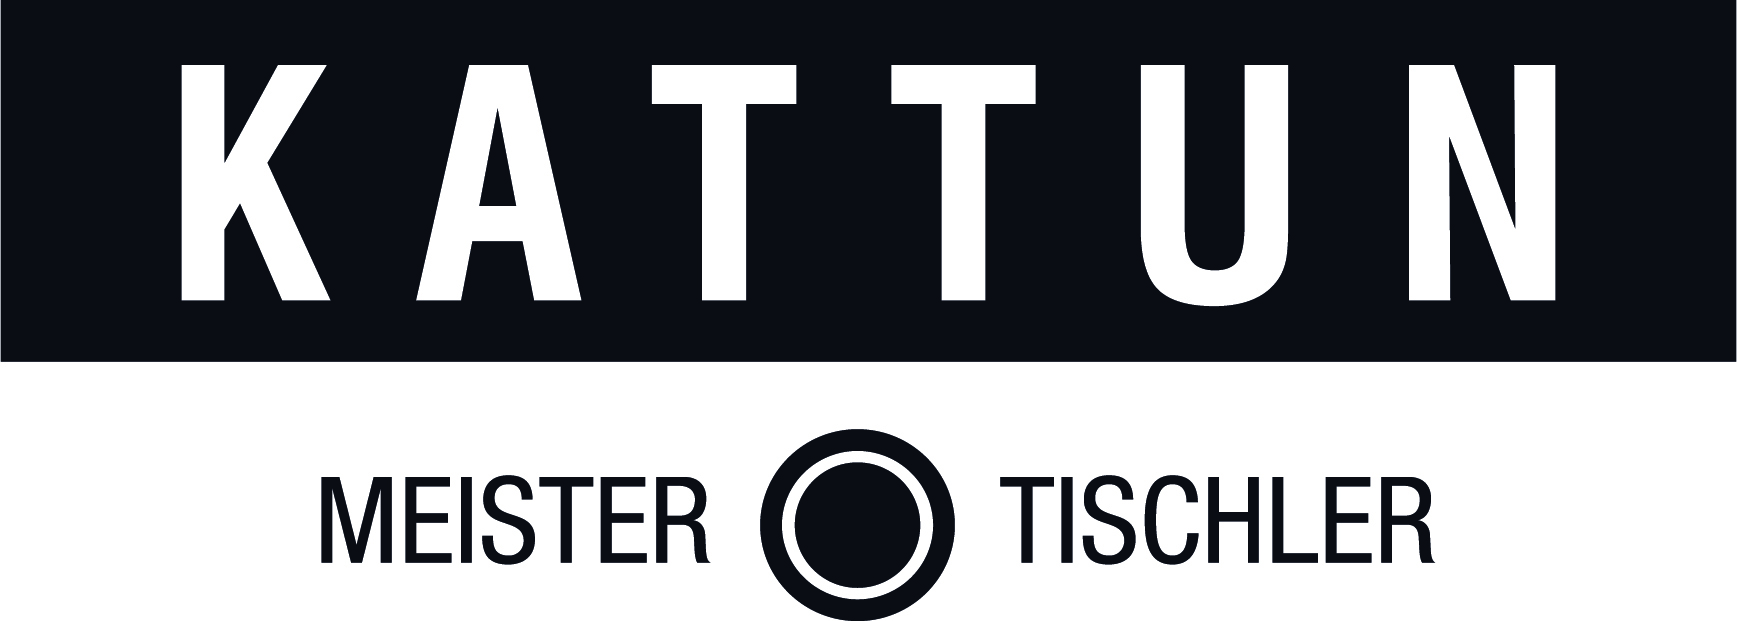 logos/Kattun_Logo_2013.jpg Logo